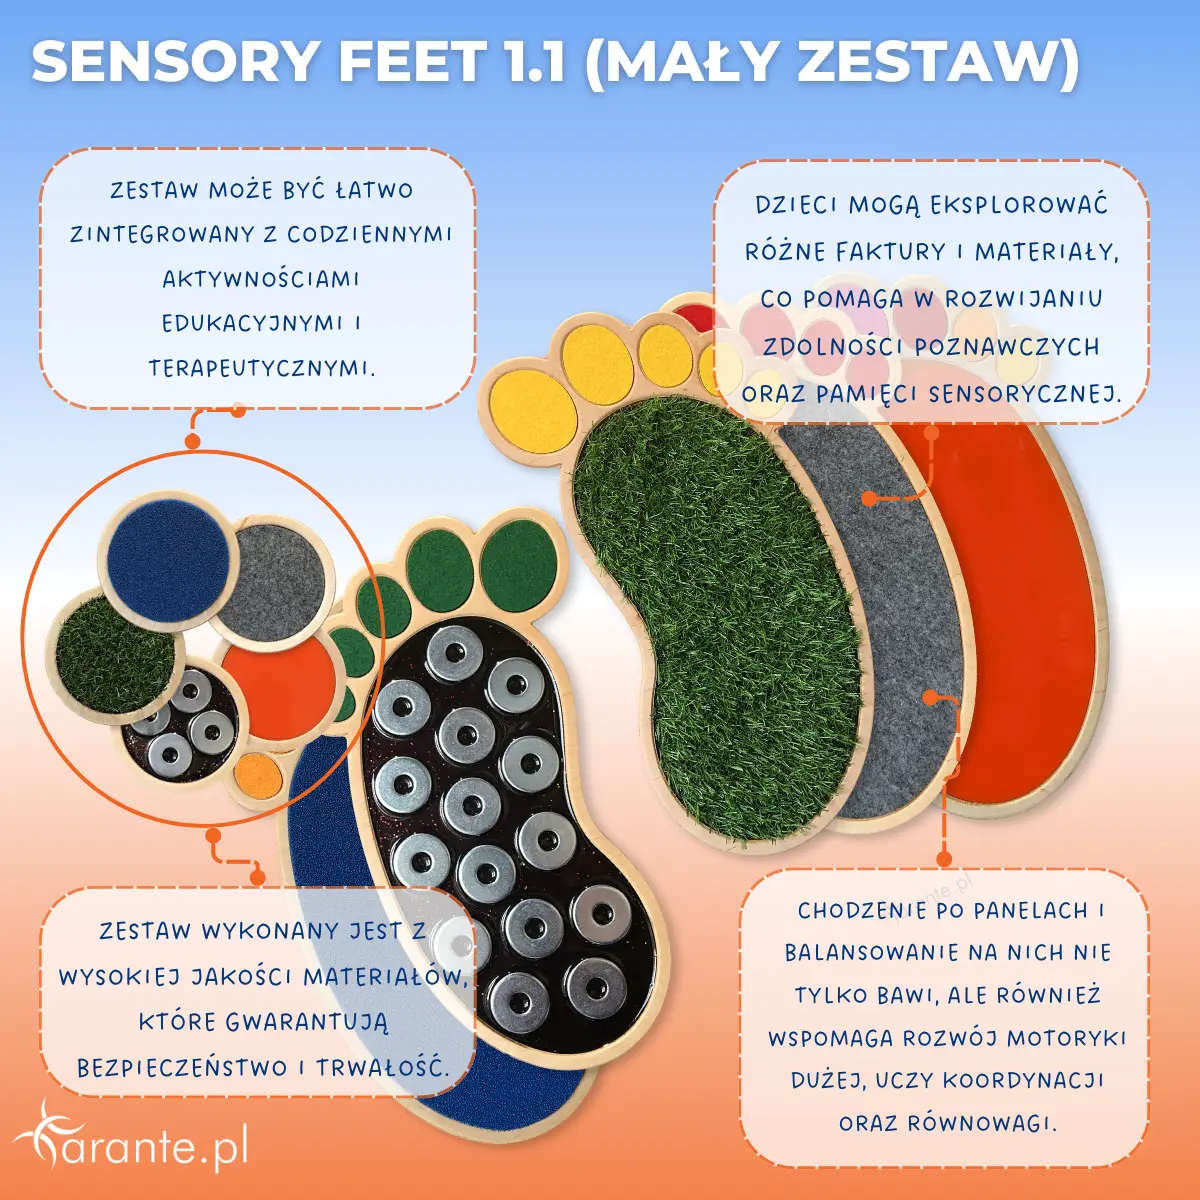 Sensory Feet 1.1 (mały zestaw)